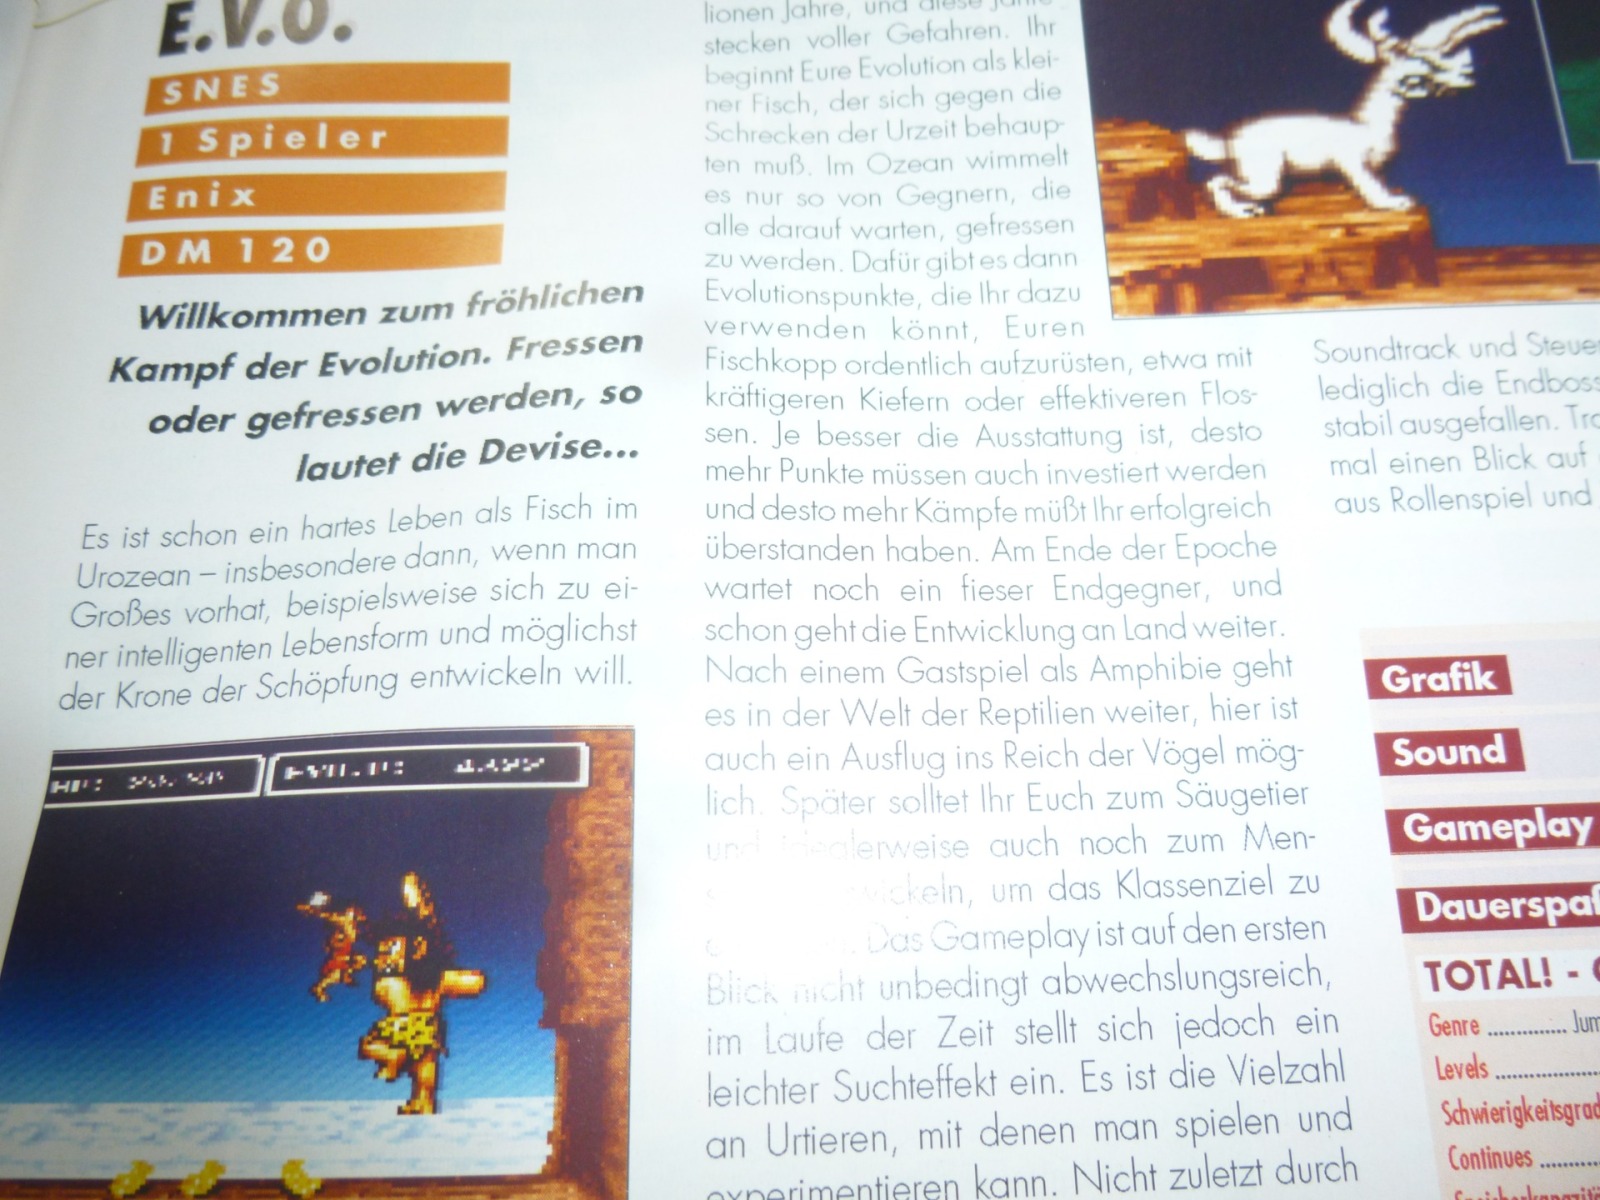 TOTAL Das unabhängige Magazin - 100% Nintendo - Ausgabe 10/93 1993 34